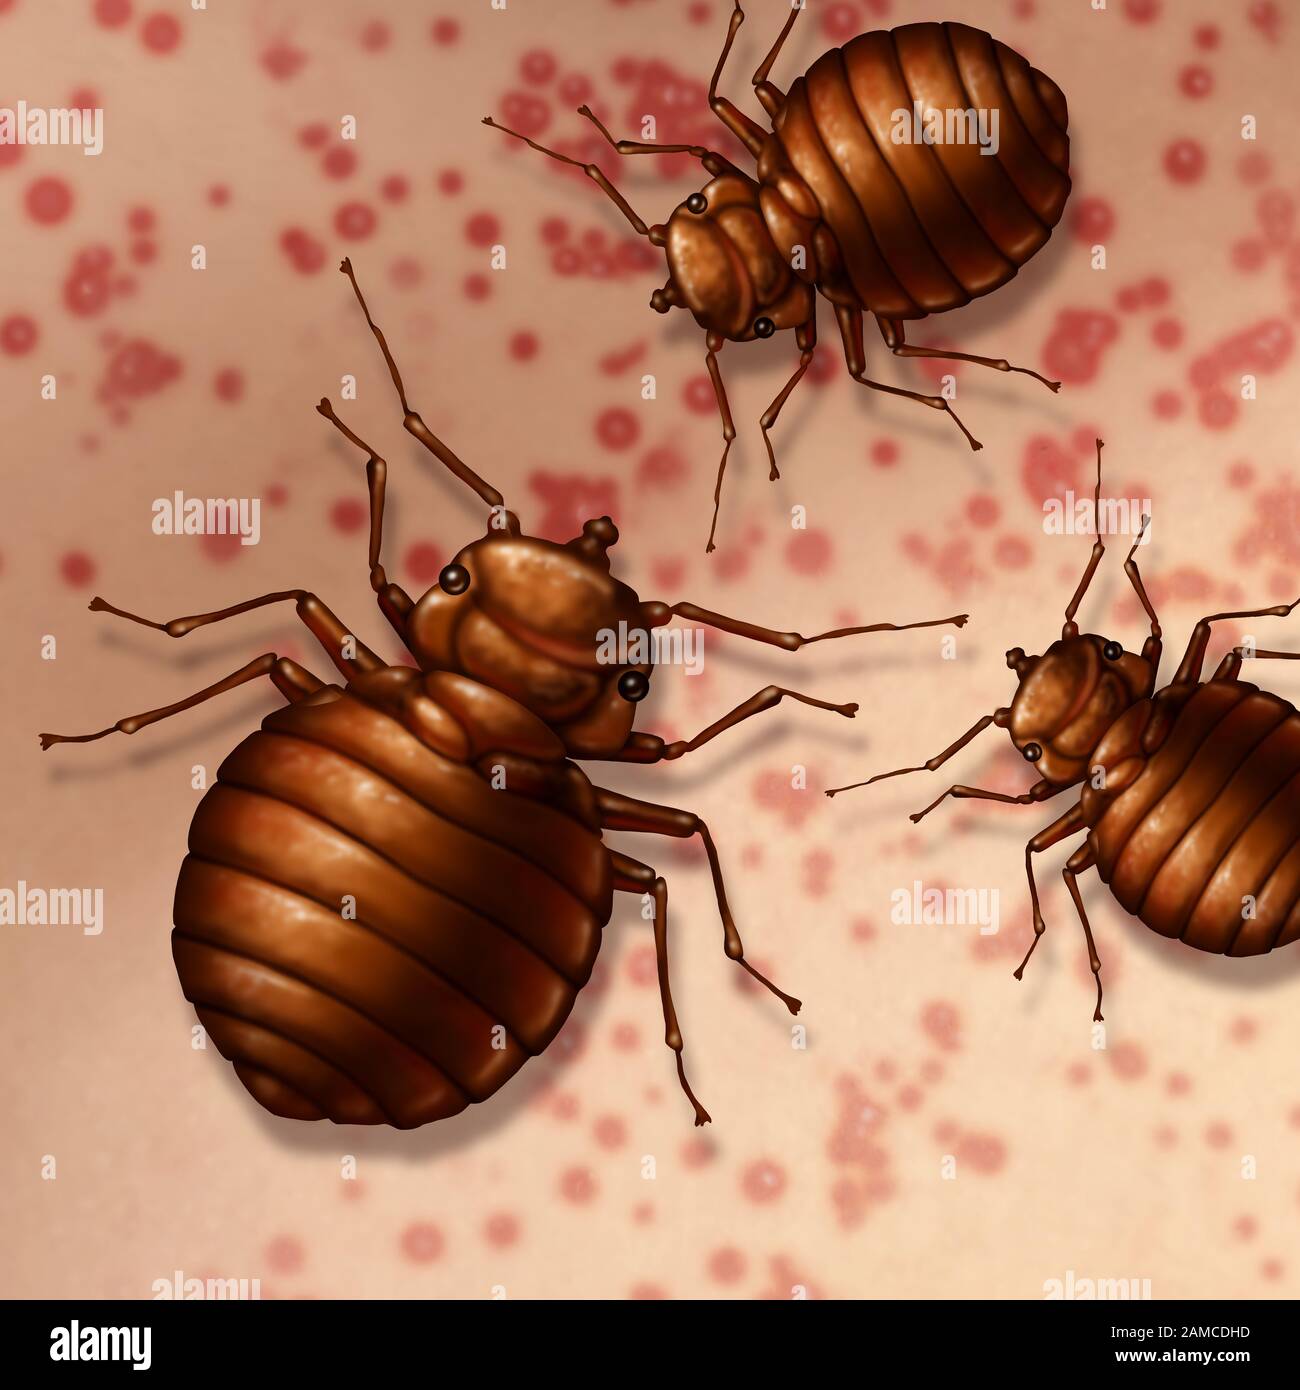 Bug letto sulla pelle come bedbugs morsi sul corpo umano o bedbug infestation concetto come un primo piano di parassiti insetti parassiti come un simbolo di igiene. Foto Stock